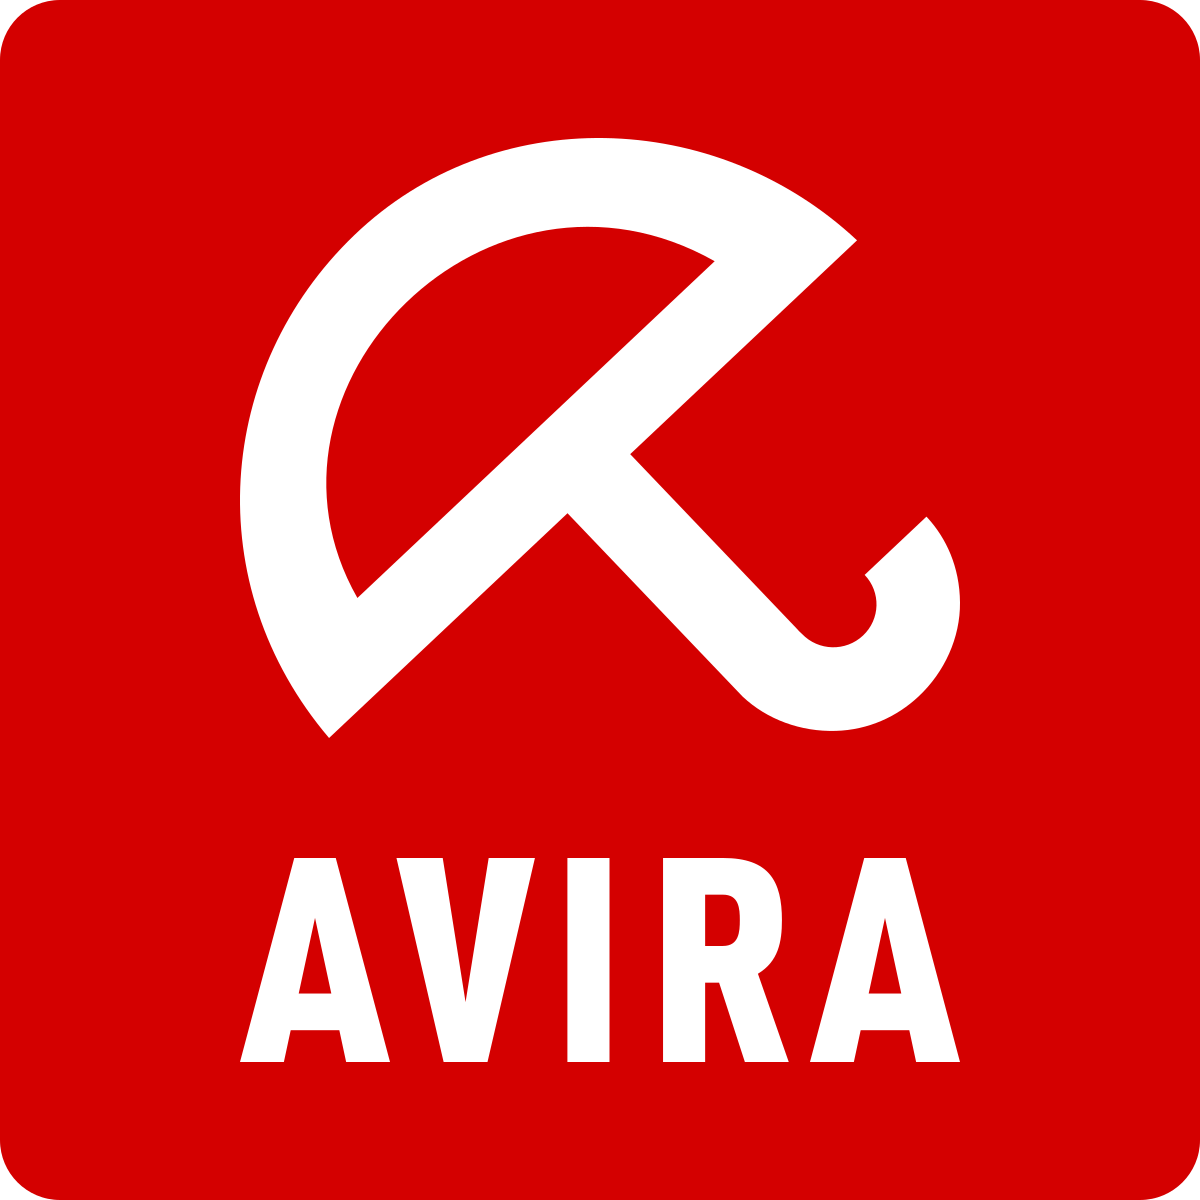 download do avira free full rendition antivirus